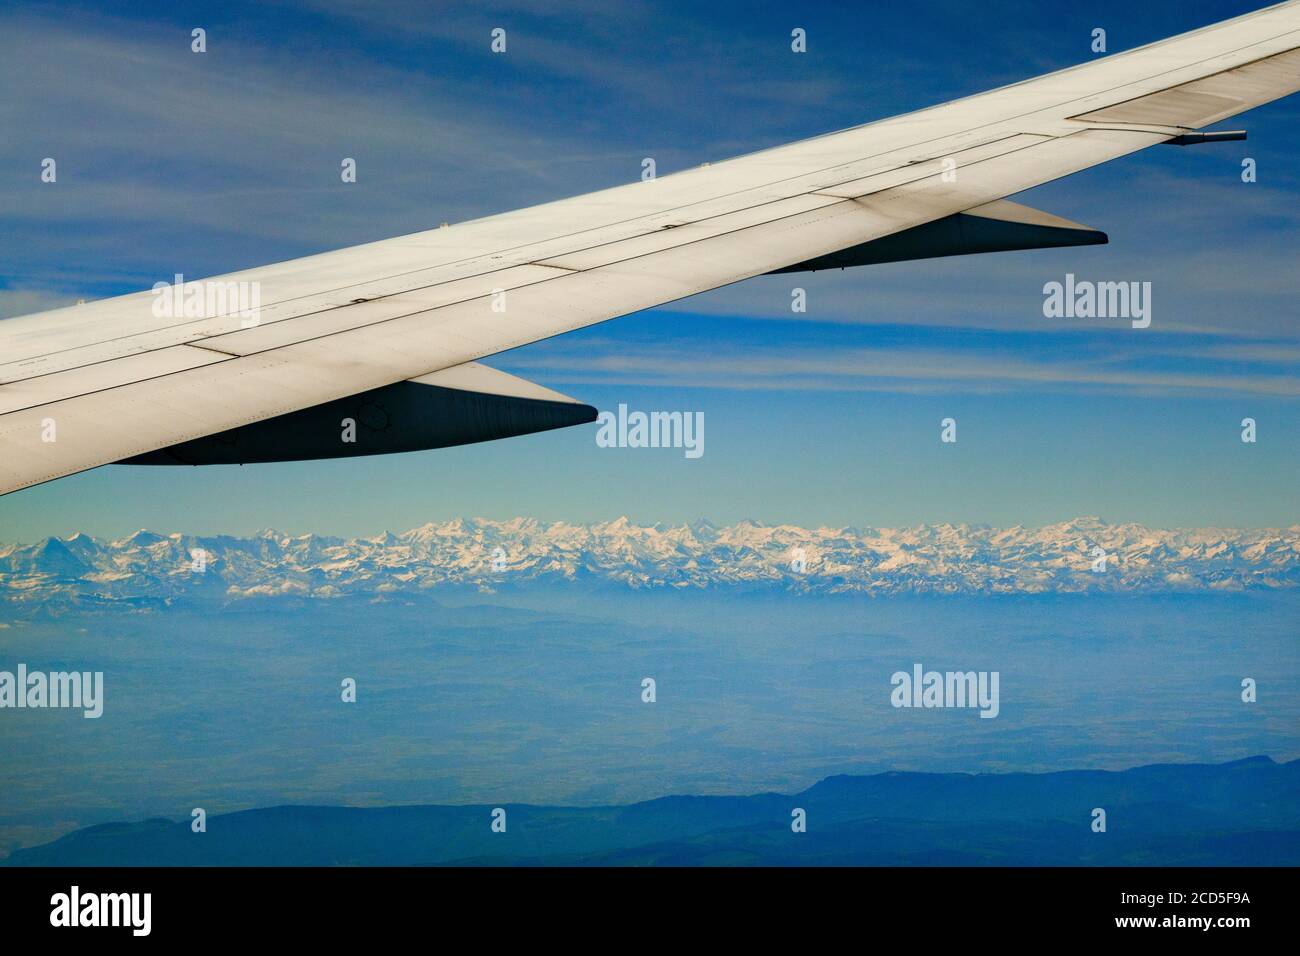 Fotografia dell'ala dell'aeroplano con la catena montuosa delle Alpi svizzere sullo sfondo, Svizzera Foto Stock